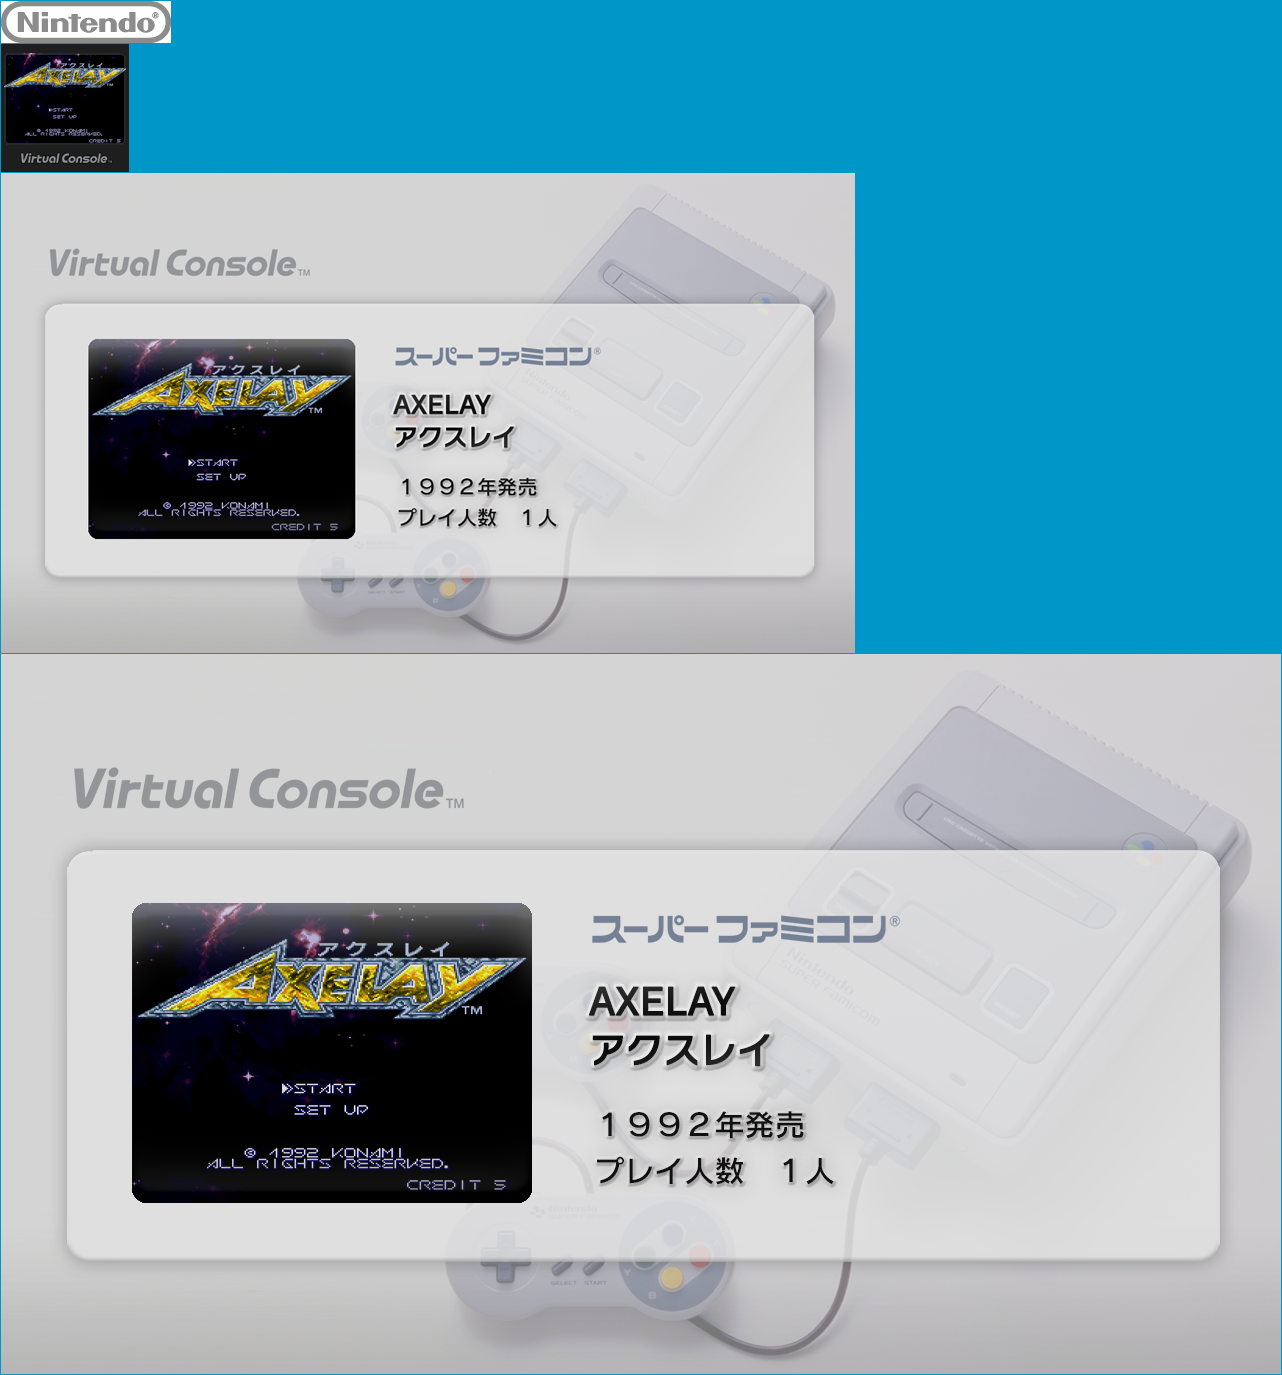 Virtual Console - AXELAY